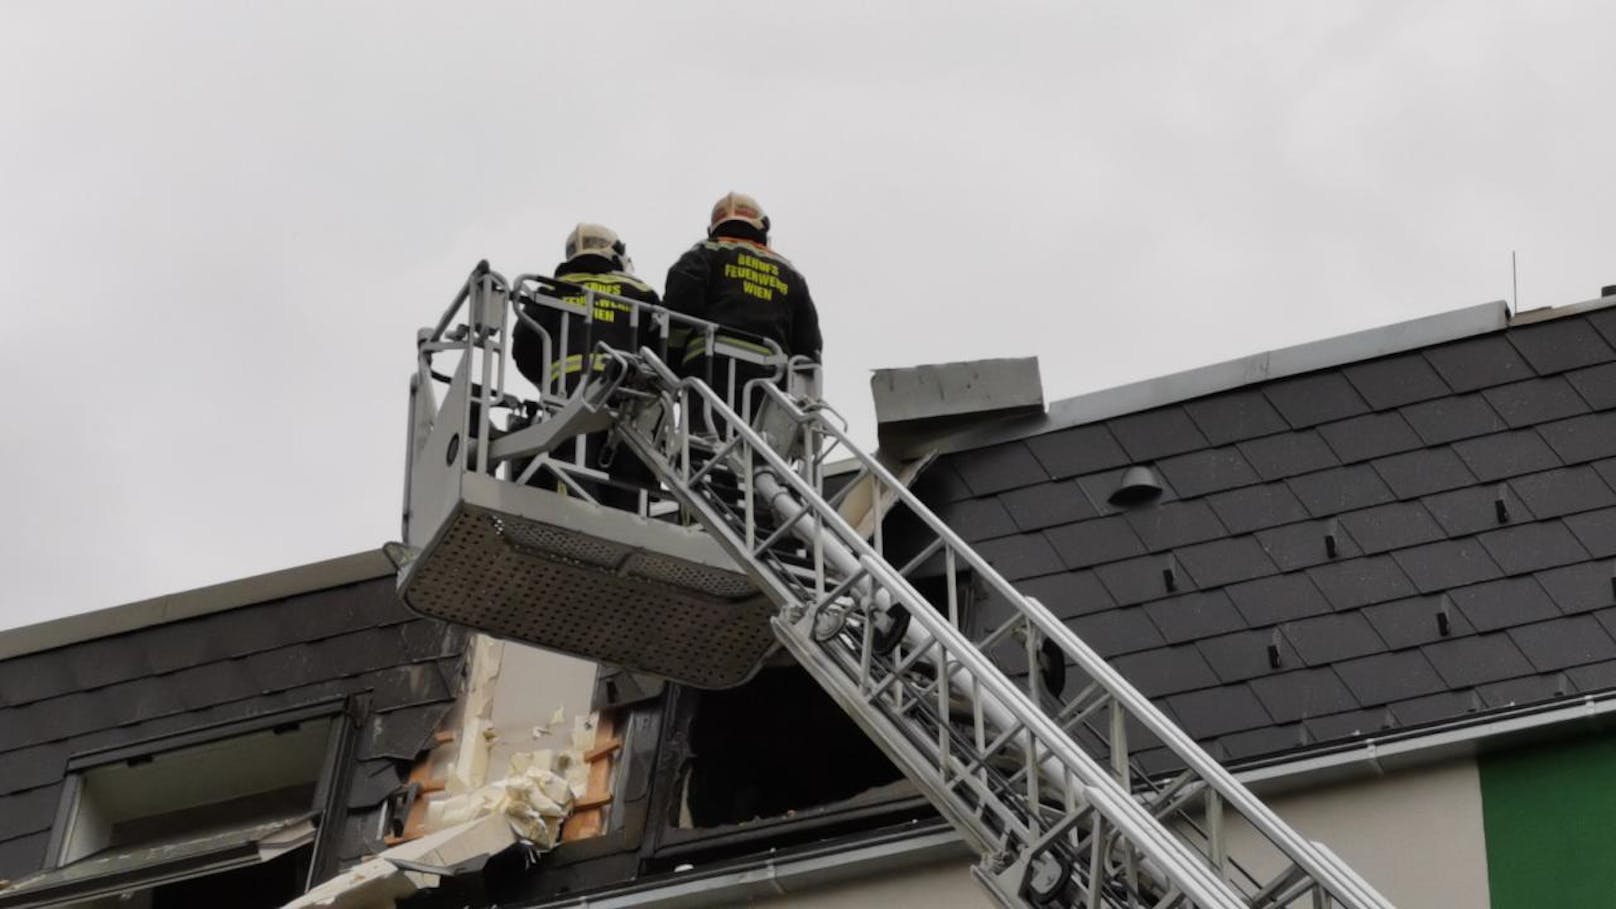 Bei einem Brand in Simmering wurden in der Nacht auf 20. August 2019 acht Personen verletzt.